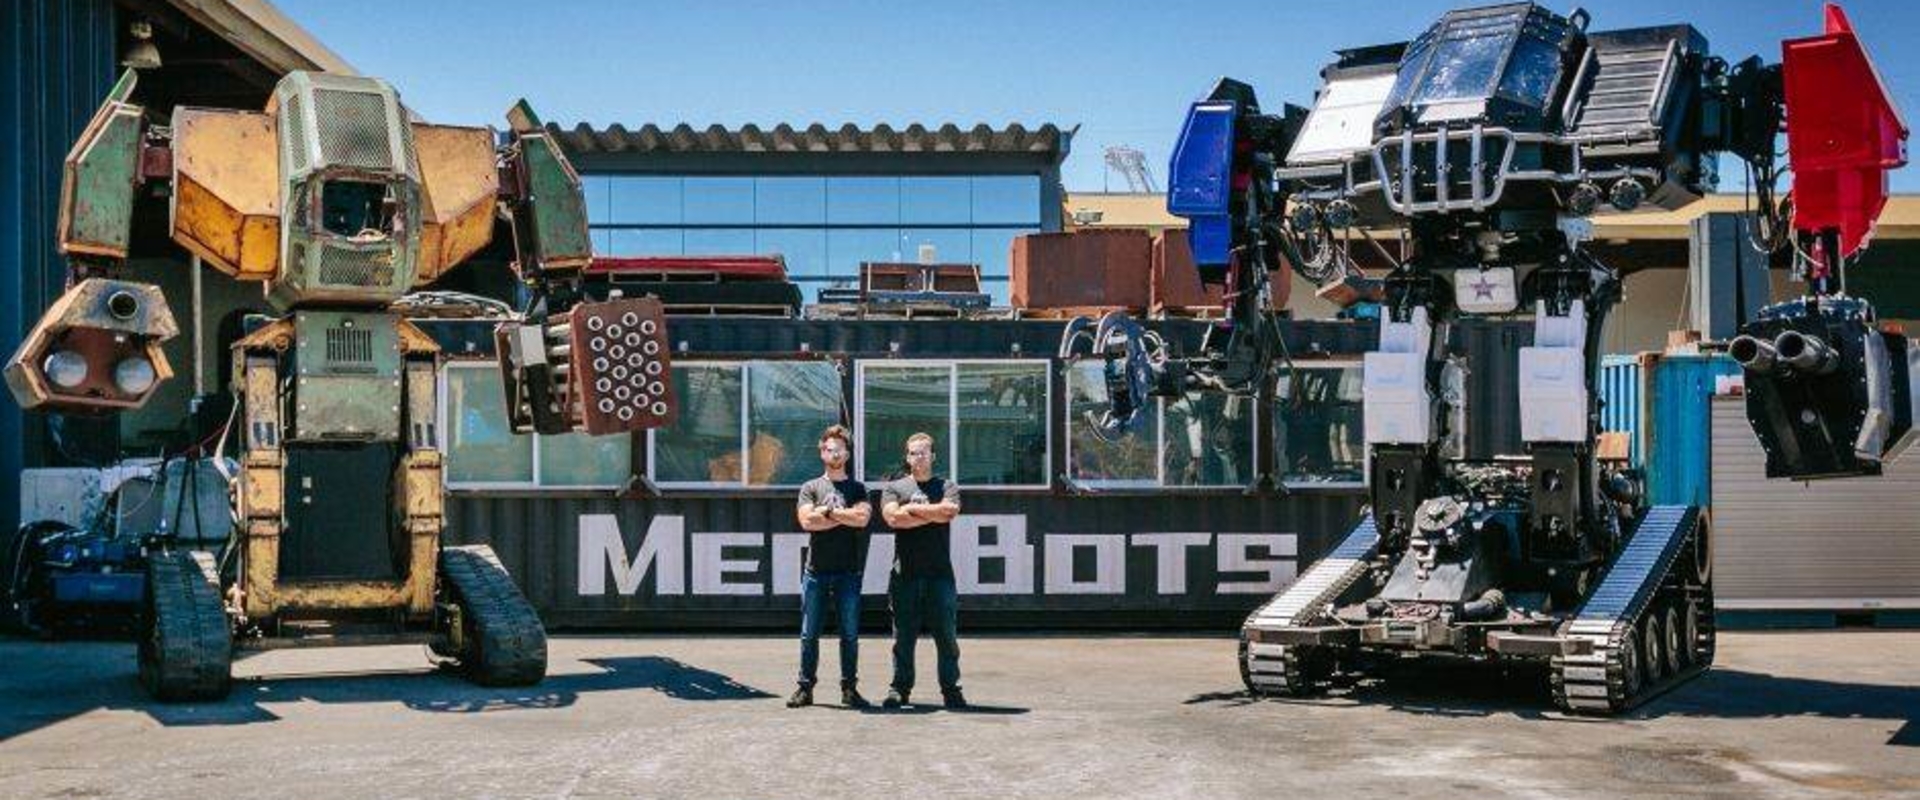 Amerika kihívta Japánt egy óriási robotpárbajra